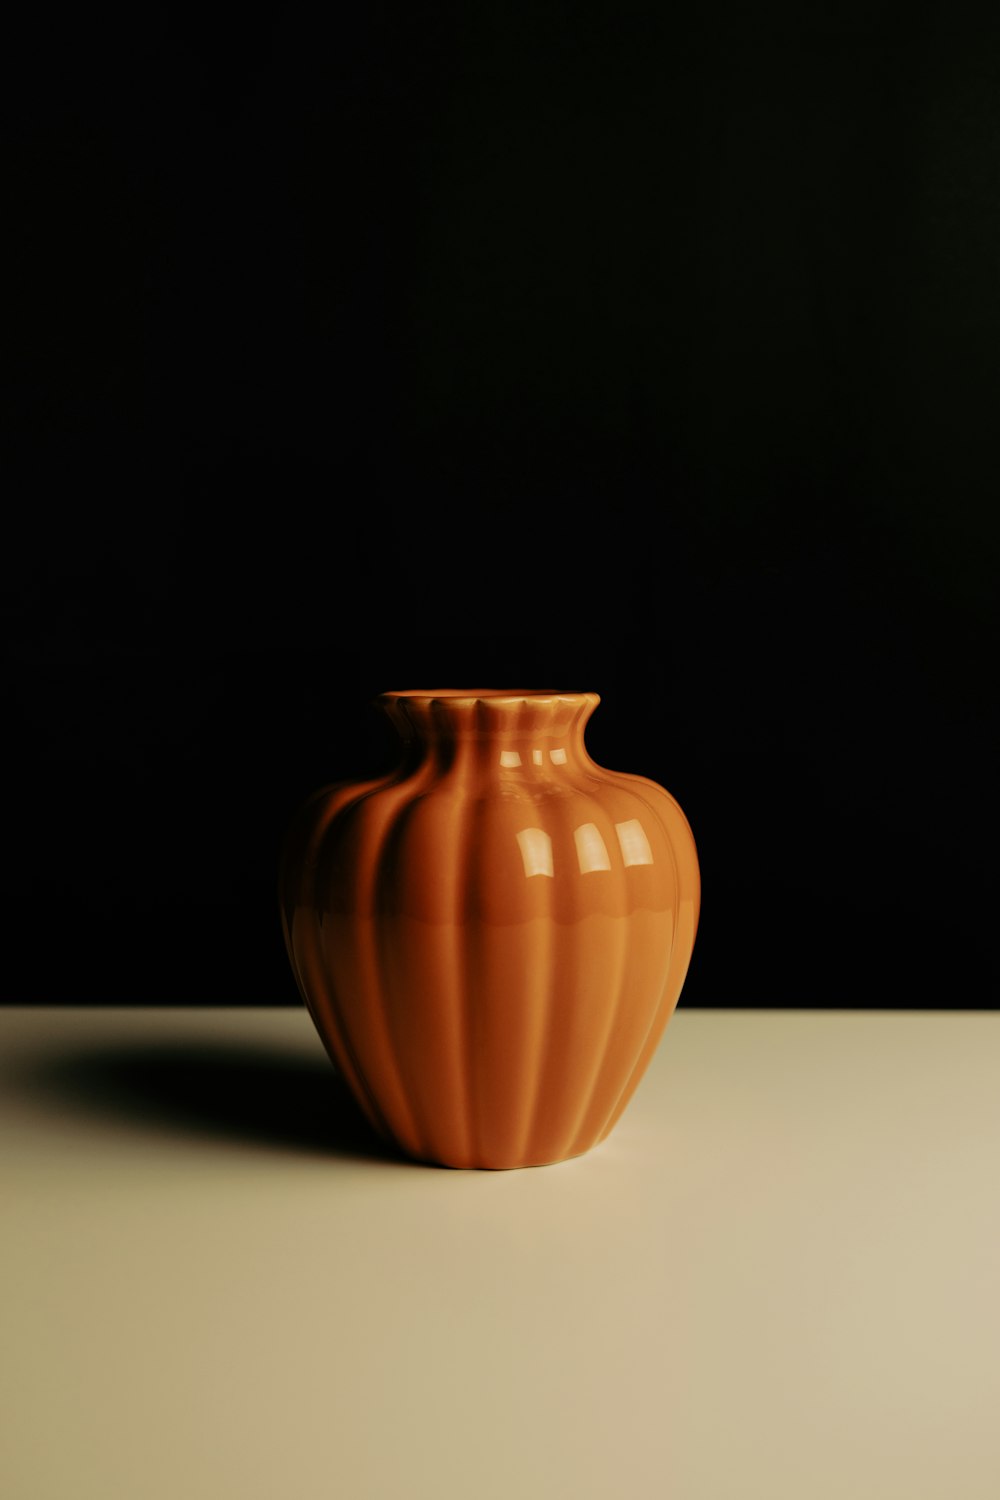 an orange vase sitting on a white table